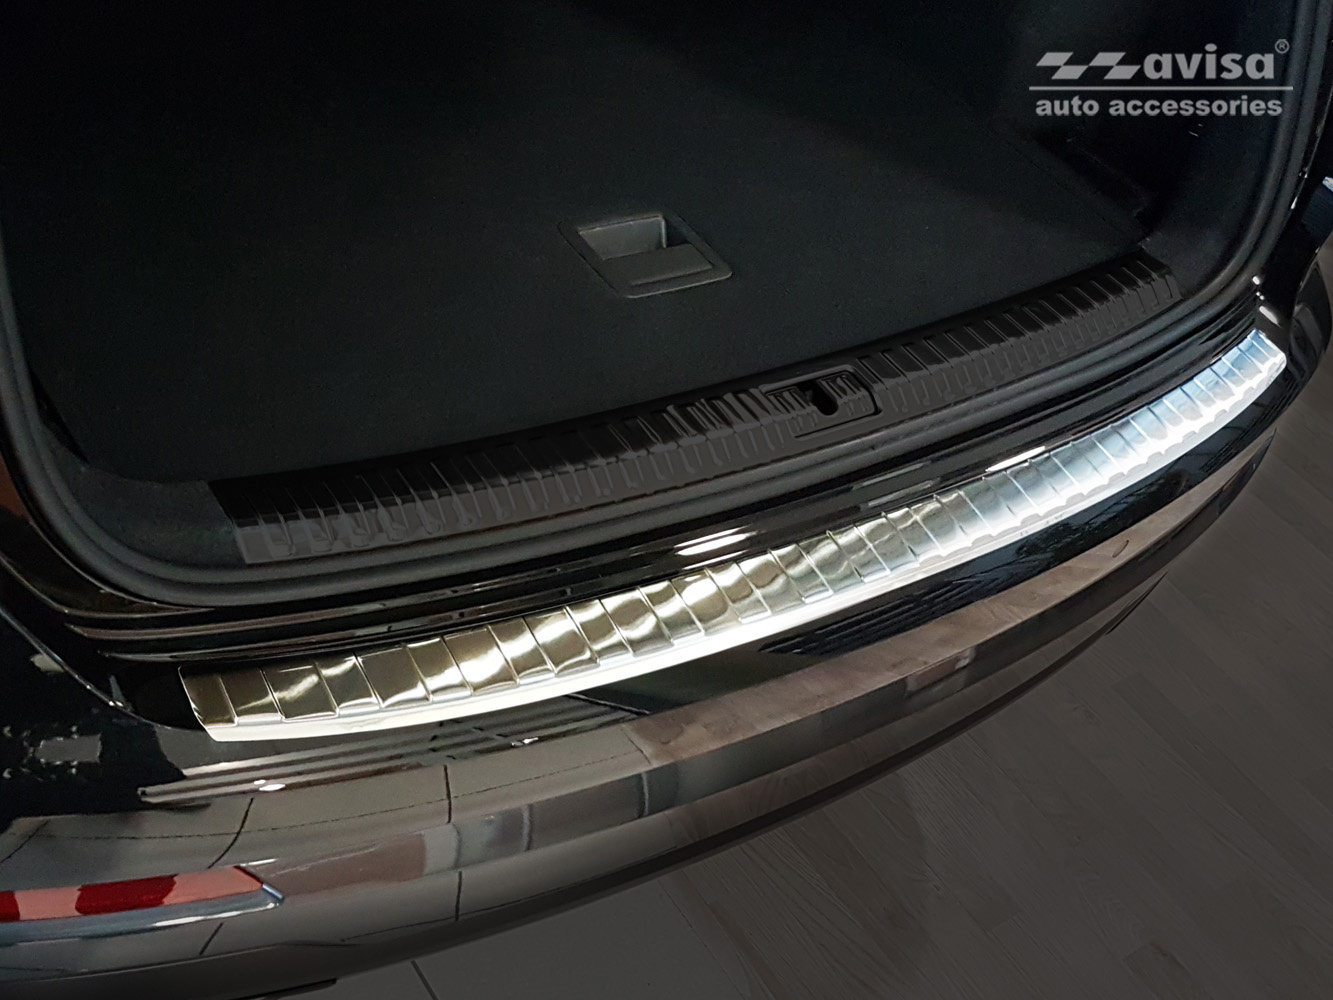 Ladekantenschutz für Audi Q3 II - Maluch Premium Autozubehör